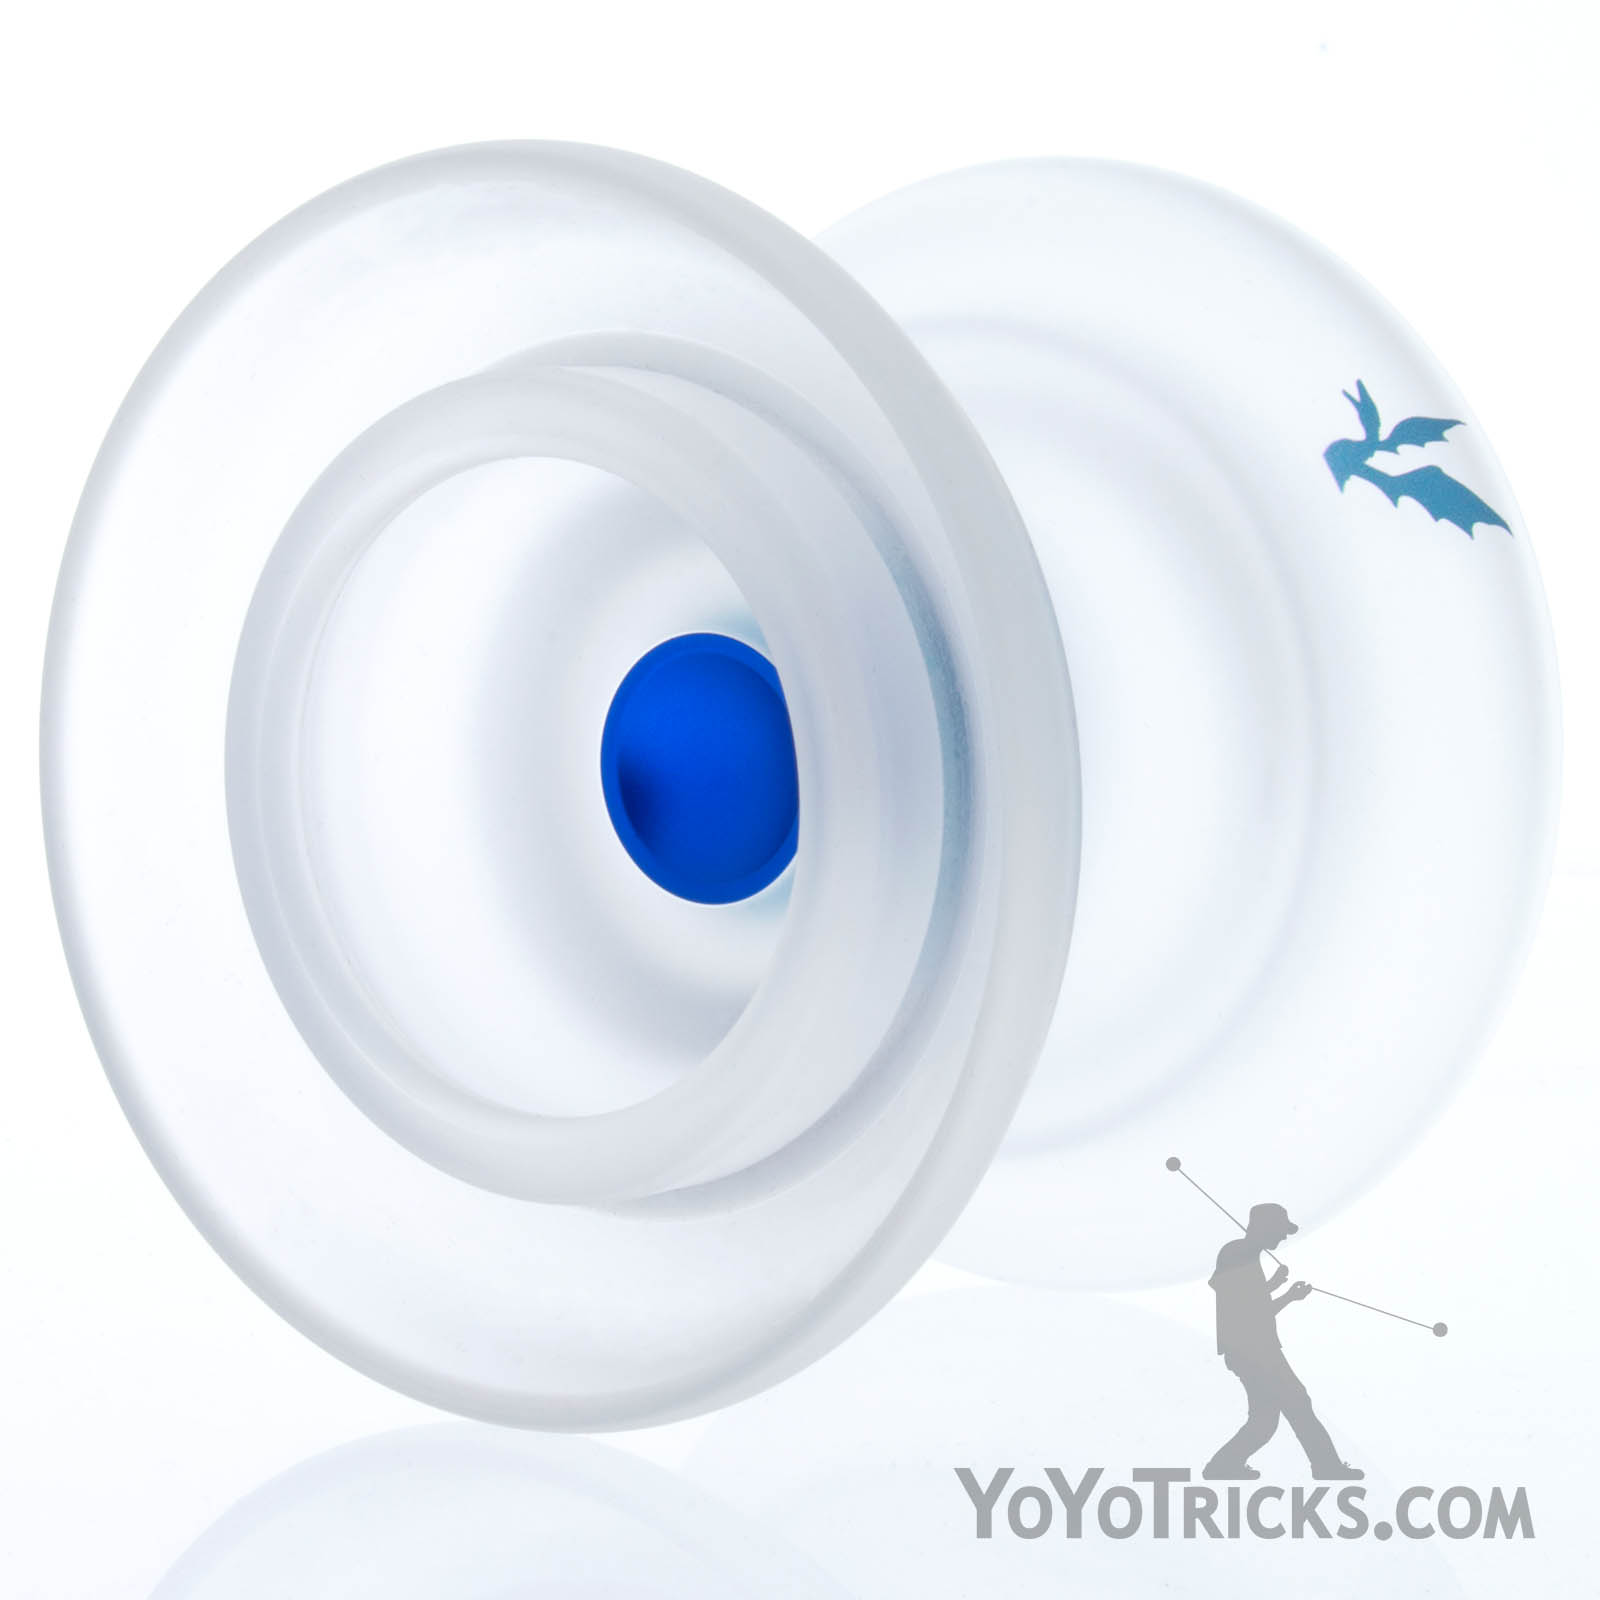 Spire yoyo - Best Offstring yoyo